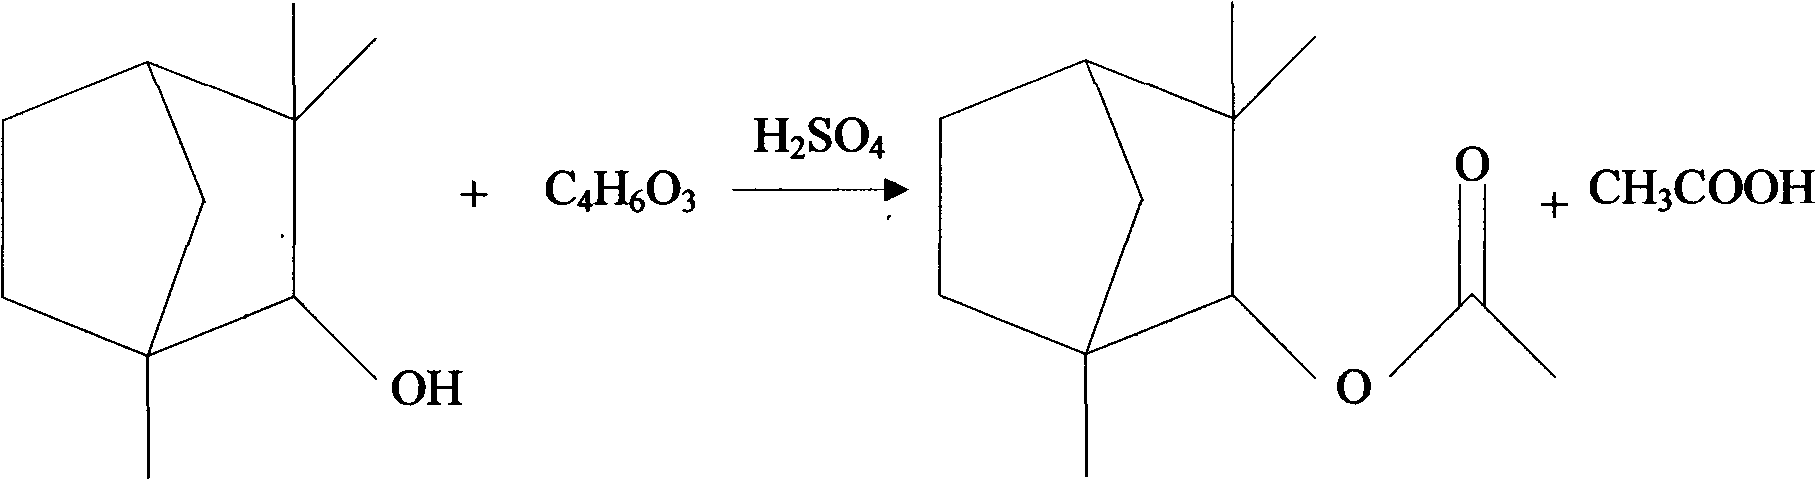 Method for preparing fenchyl acetate